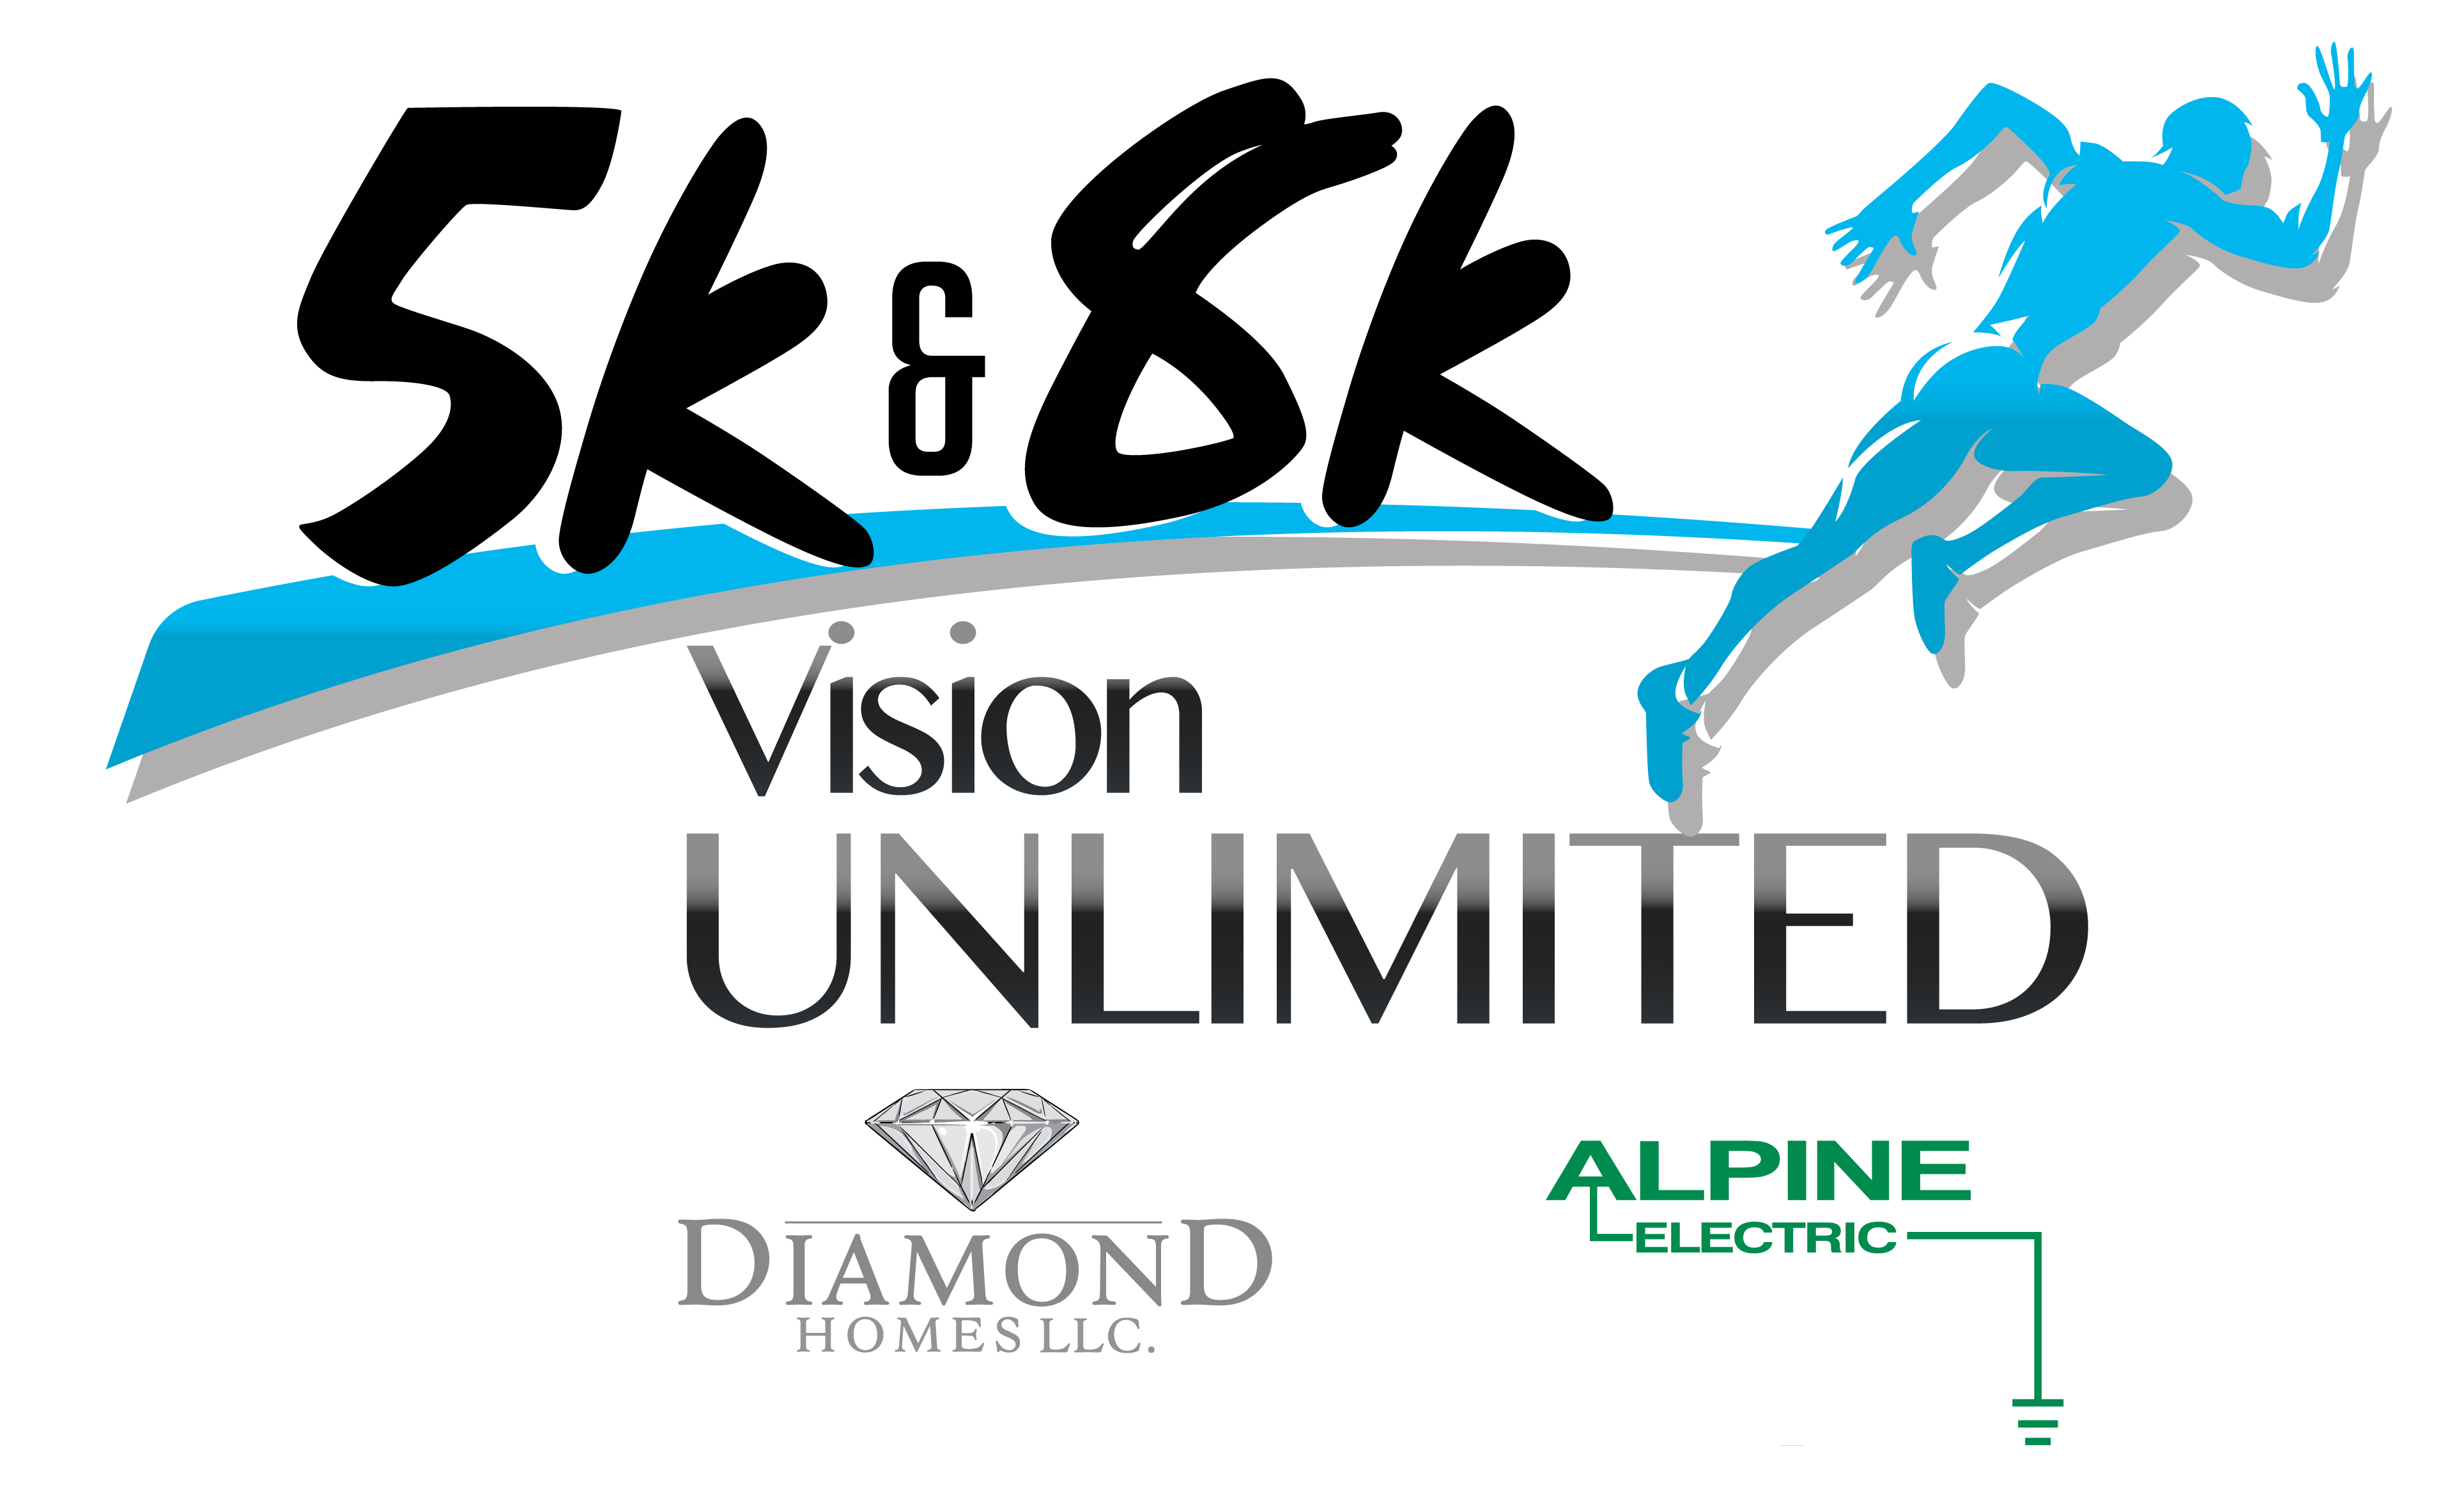 5k & 8k Vision Unlimited